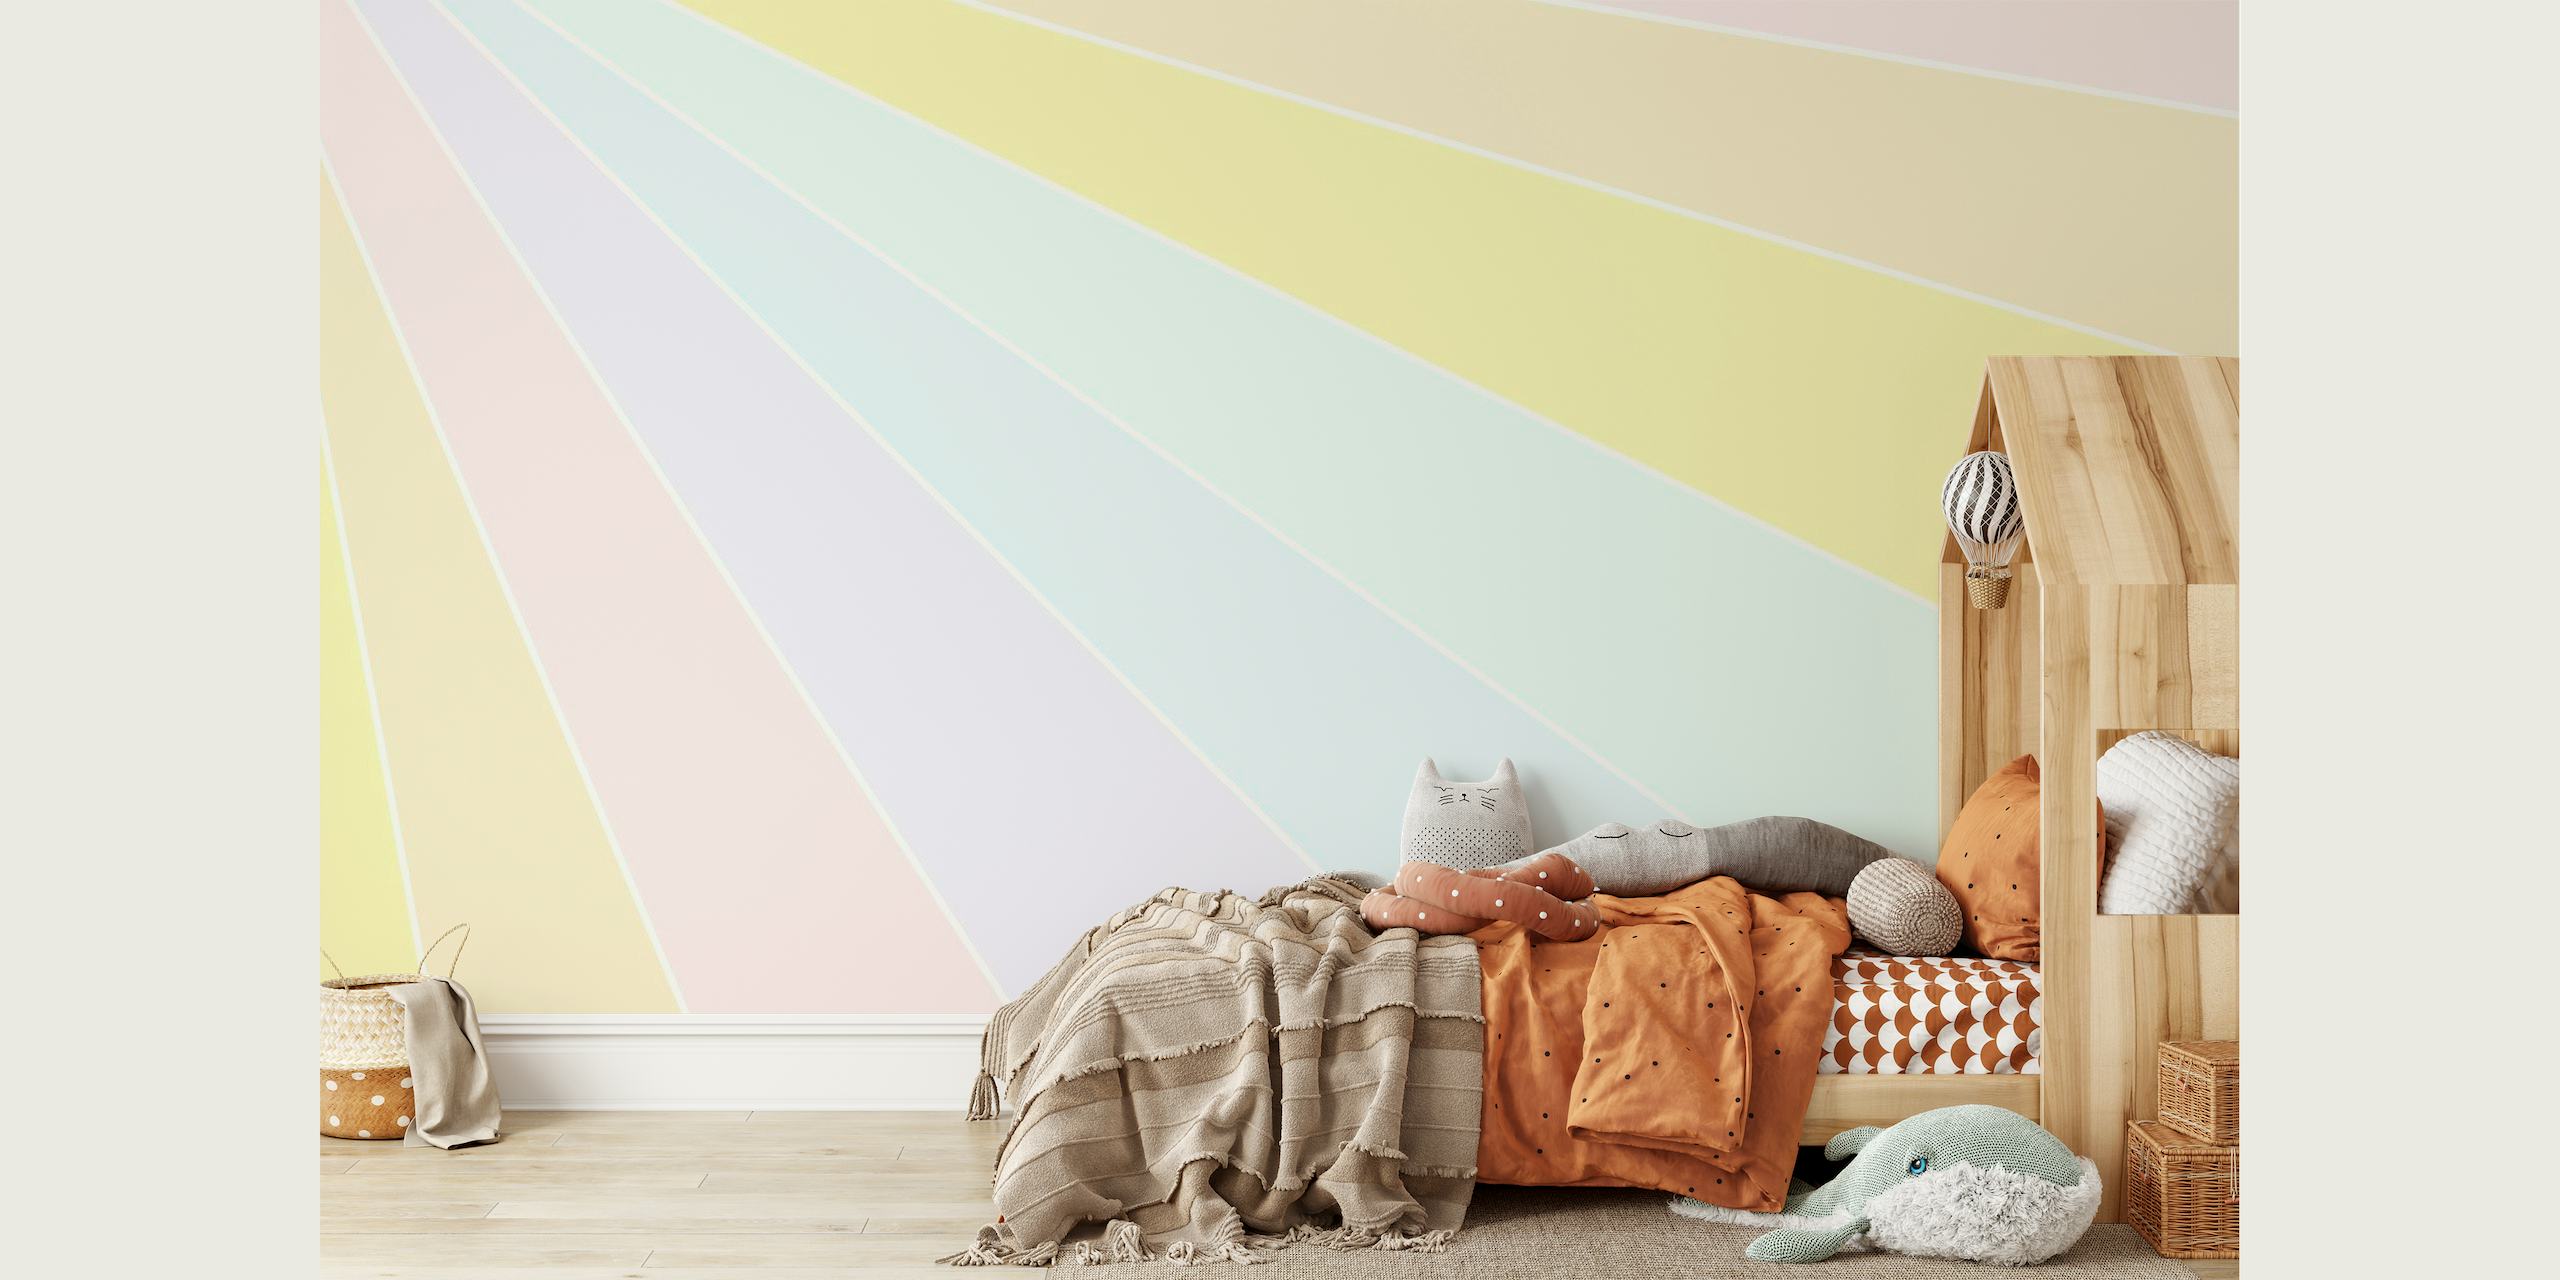 Mural de parede arco-íris pastel com faixas de cores suaves e oníricas